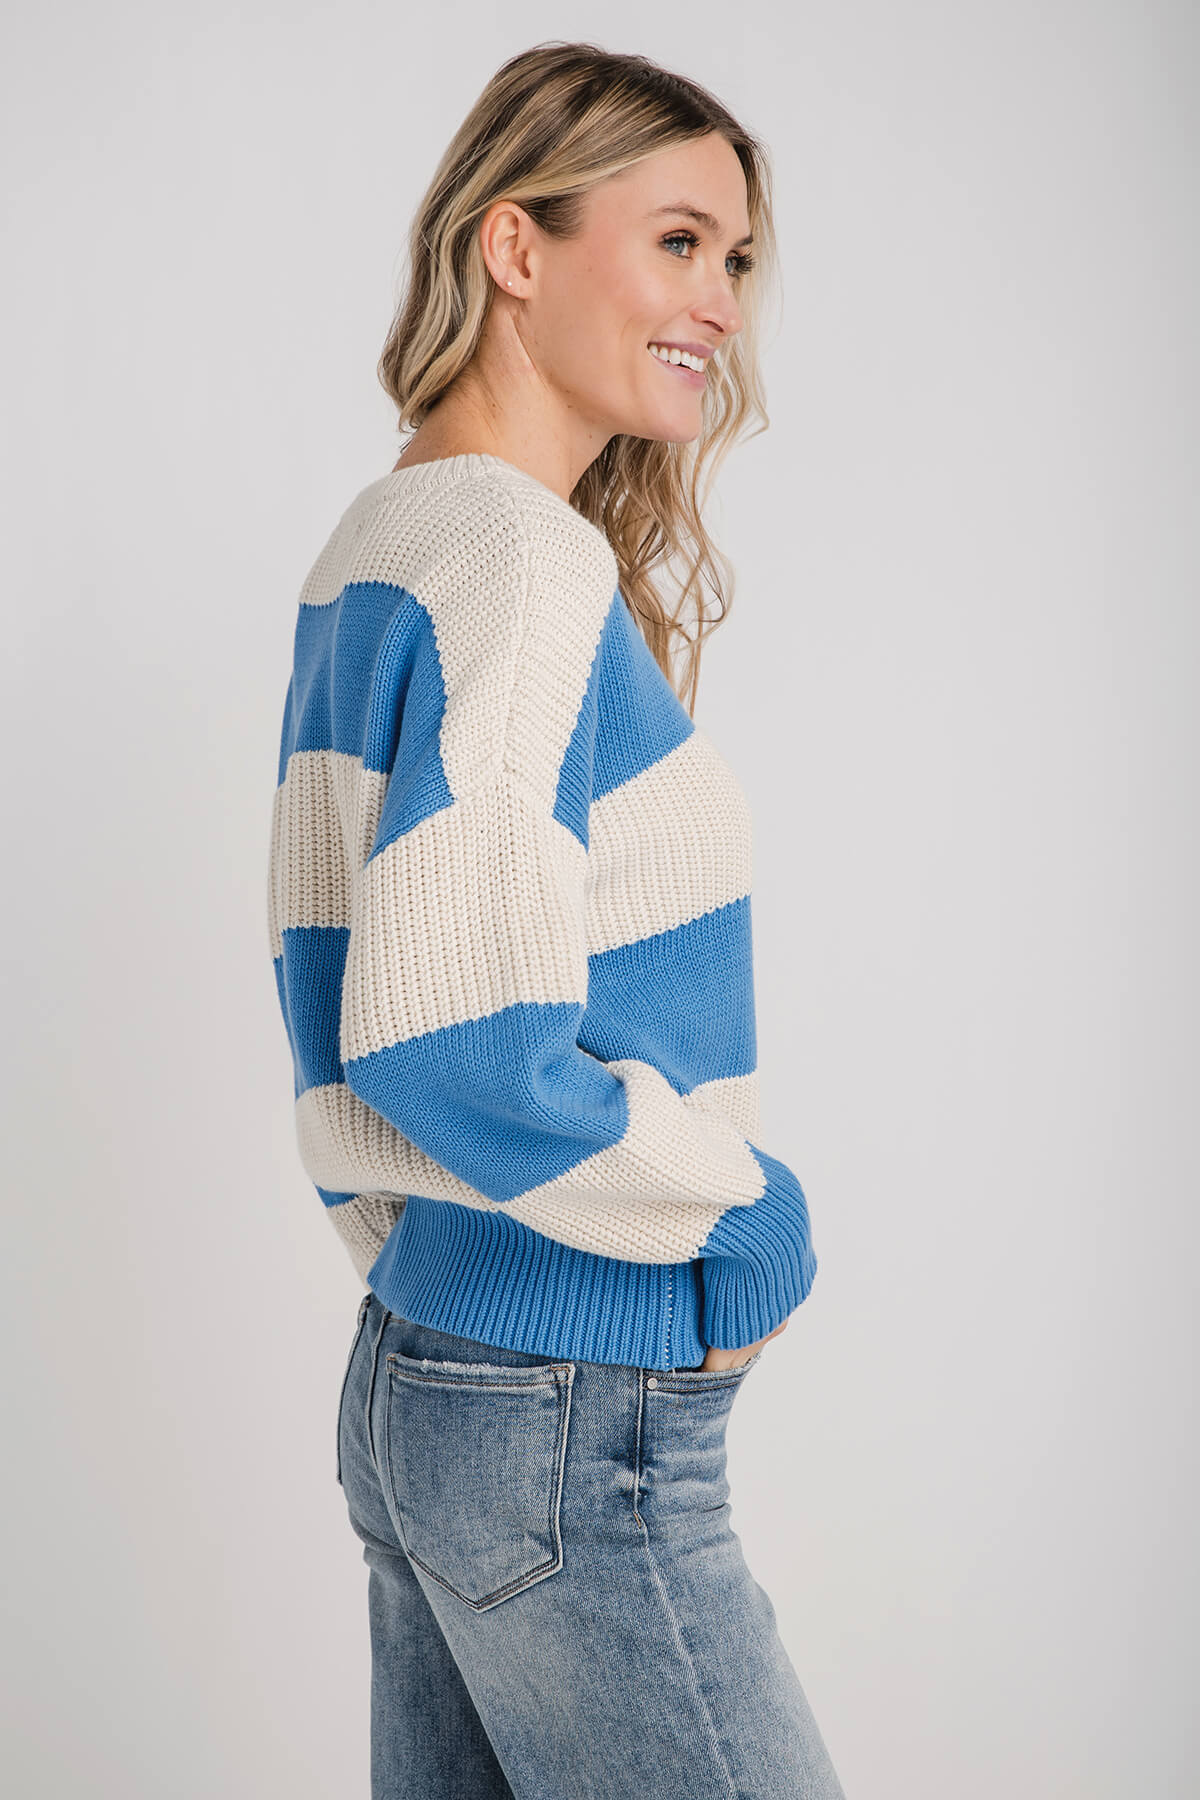 Z Supply Fresca Stripe Sweater